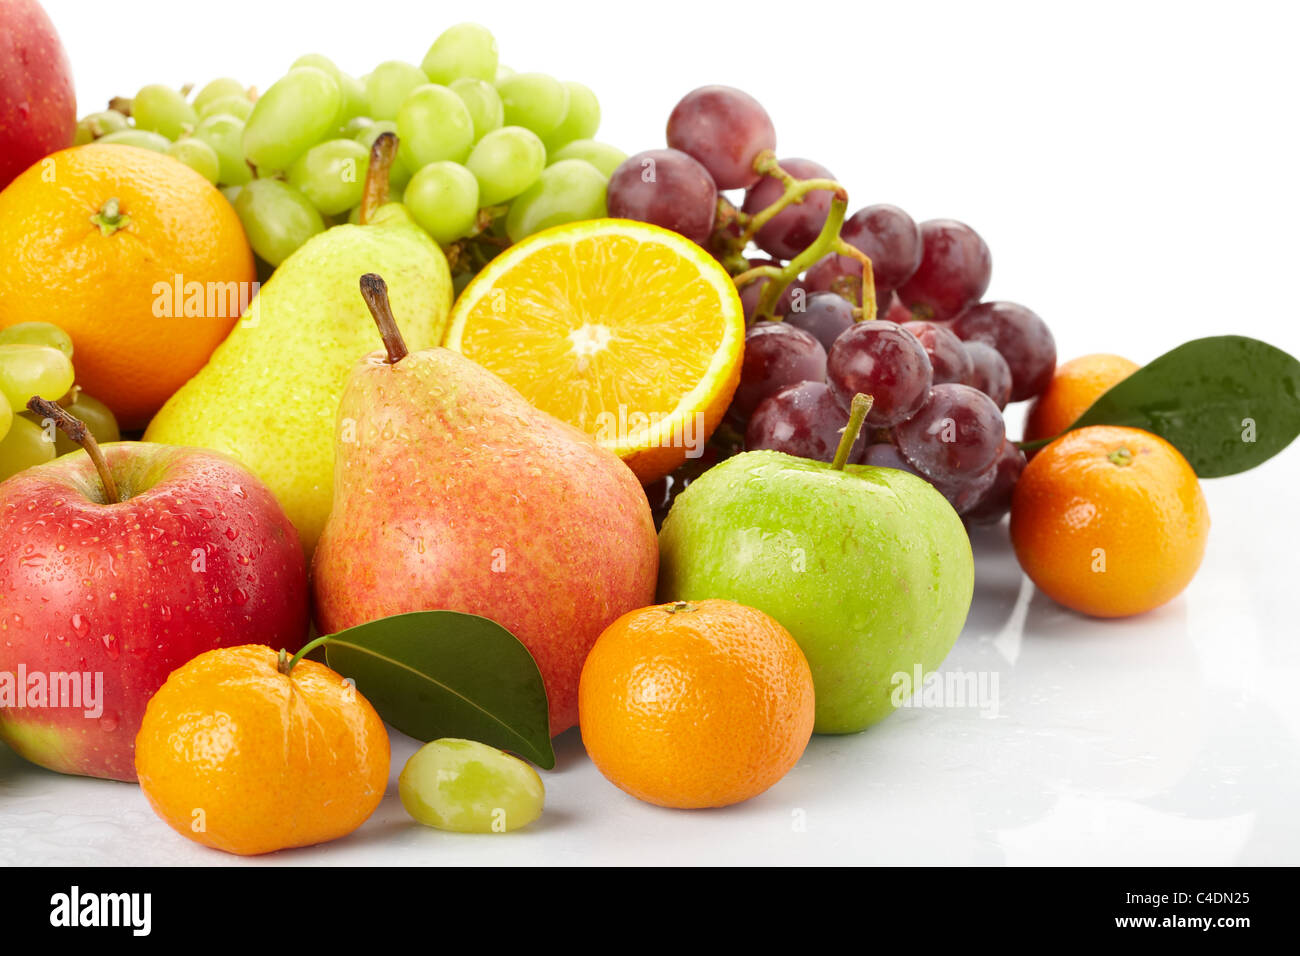 Польза фруктов для здоровья